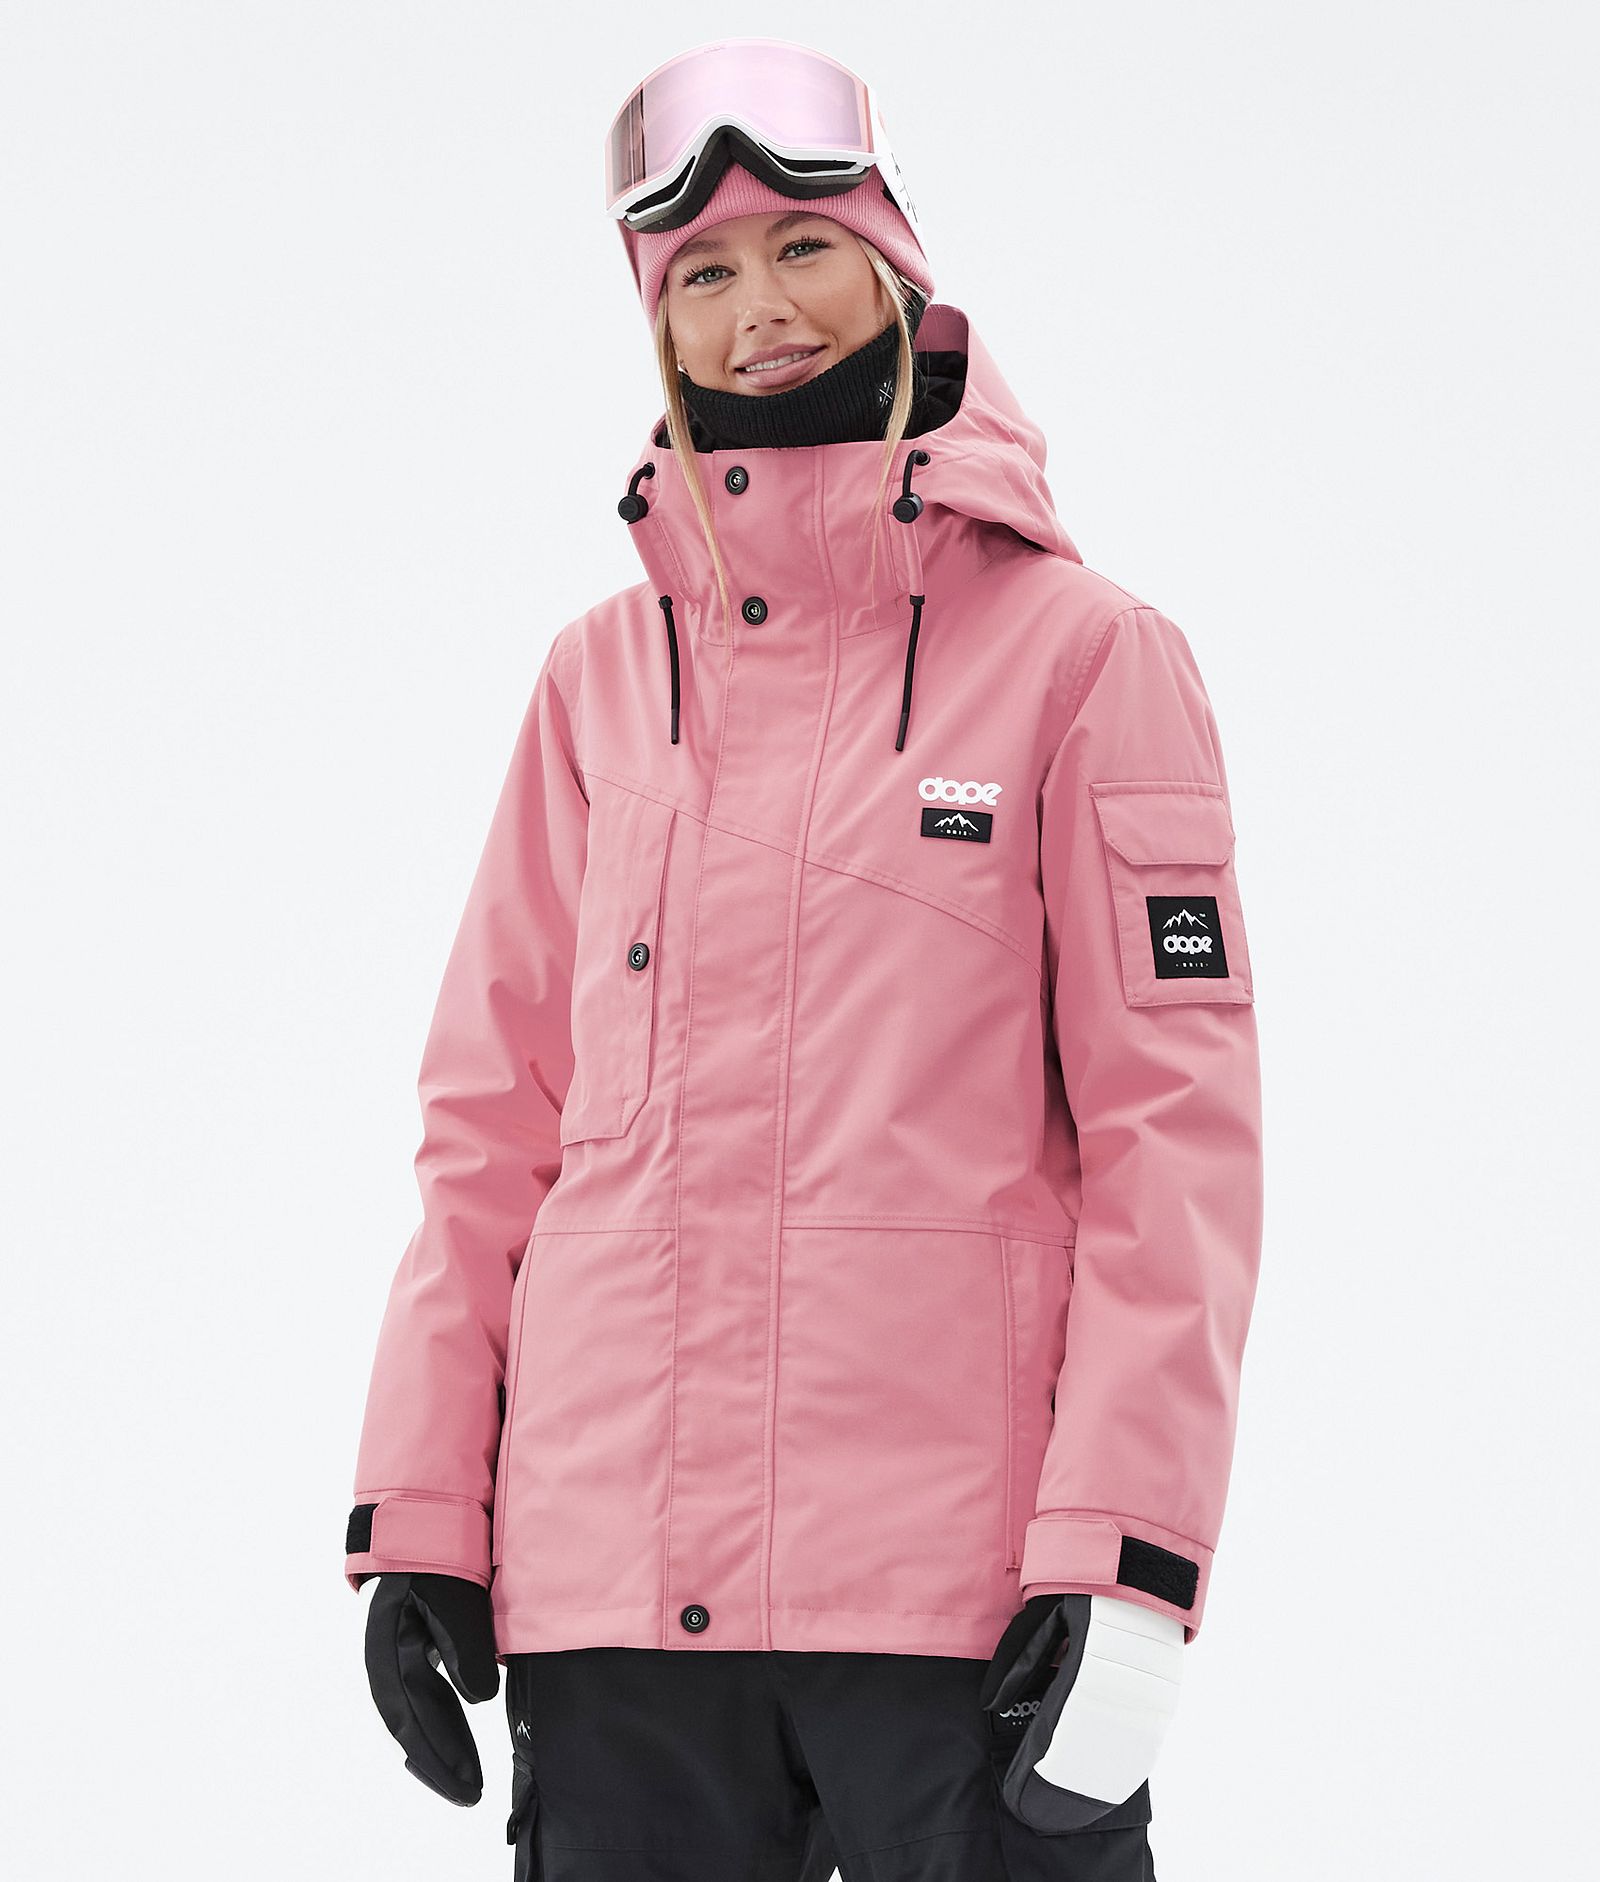 Adept W Ski Jacket Women Pink/Black, Image 1 of 10